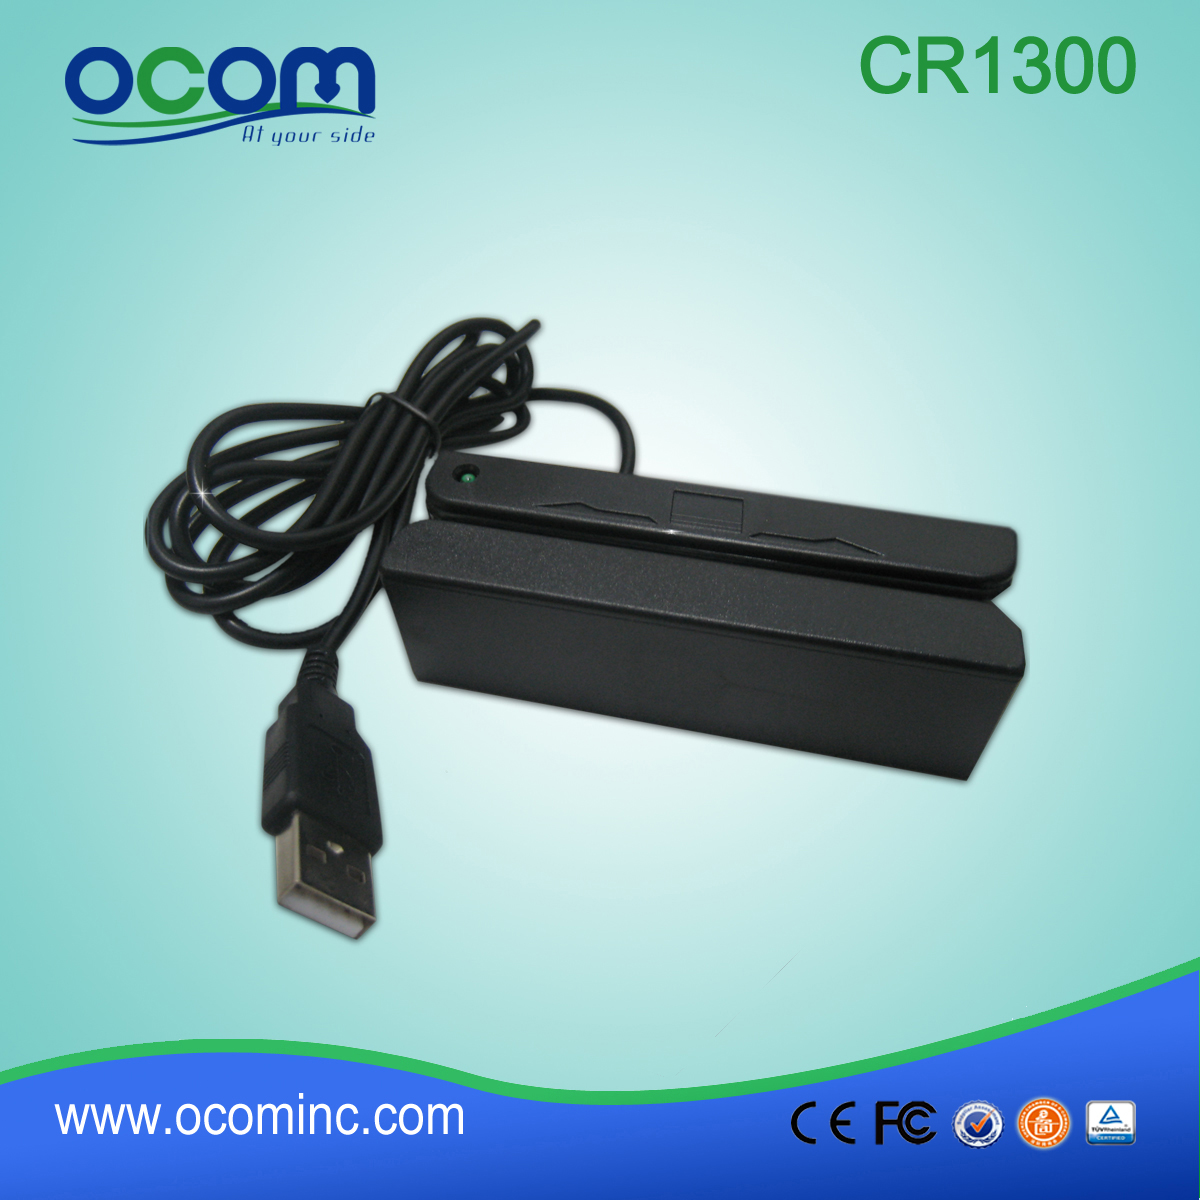 CR1300 OCOM lecteur de carte magnétique pour GPS tracker